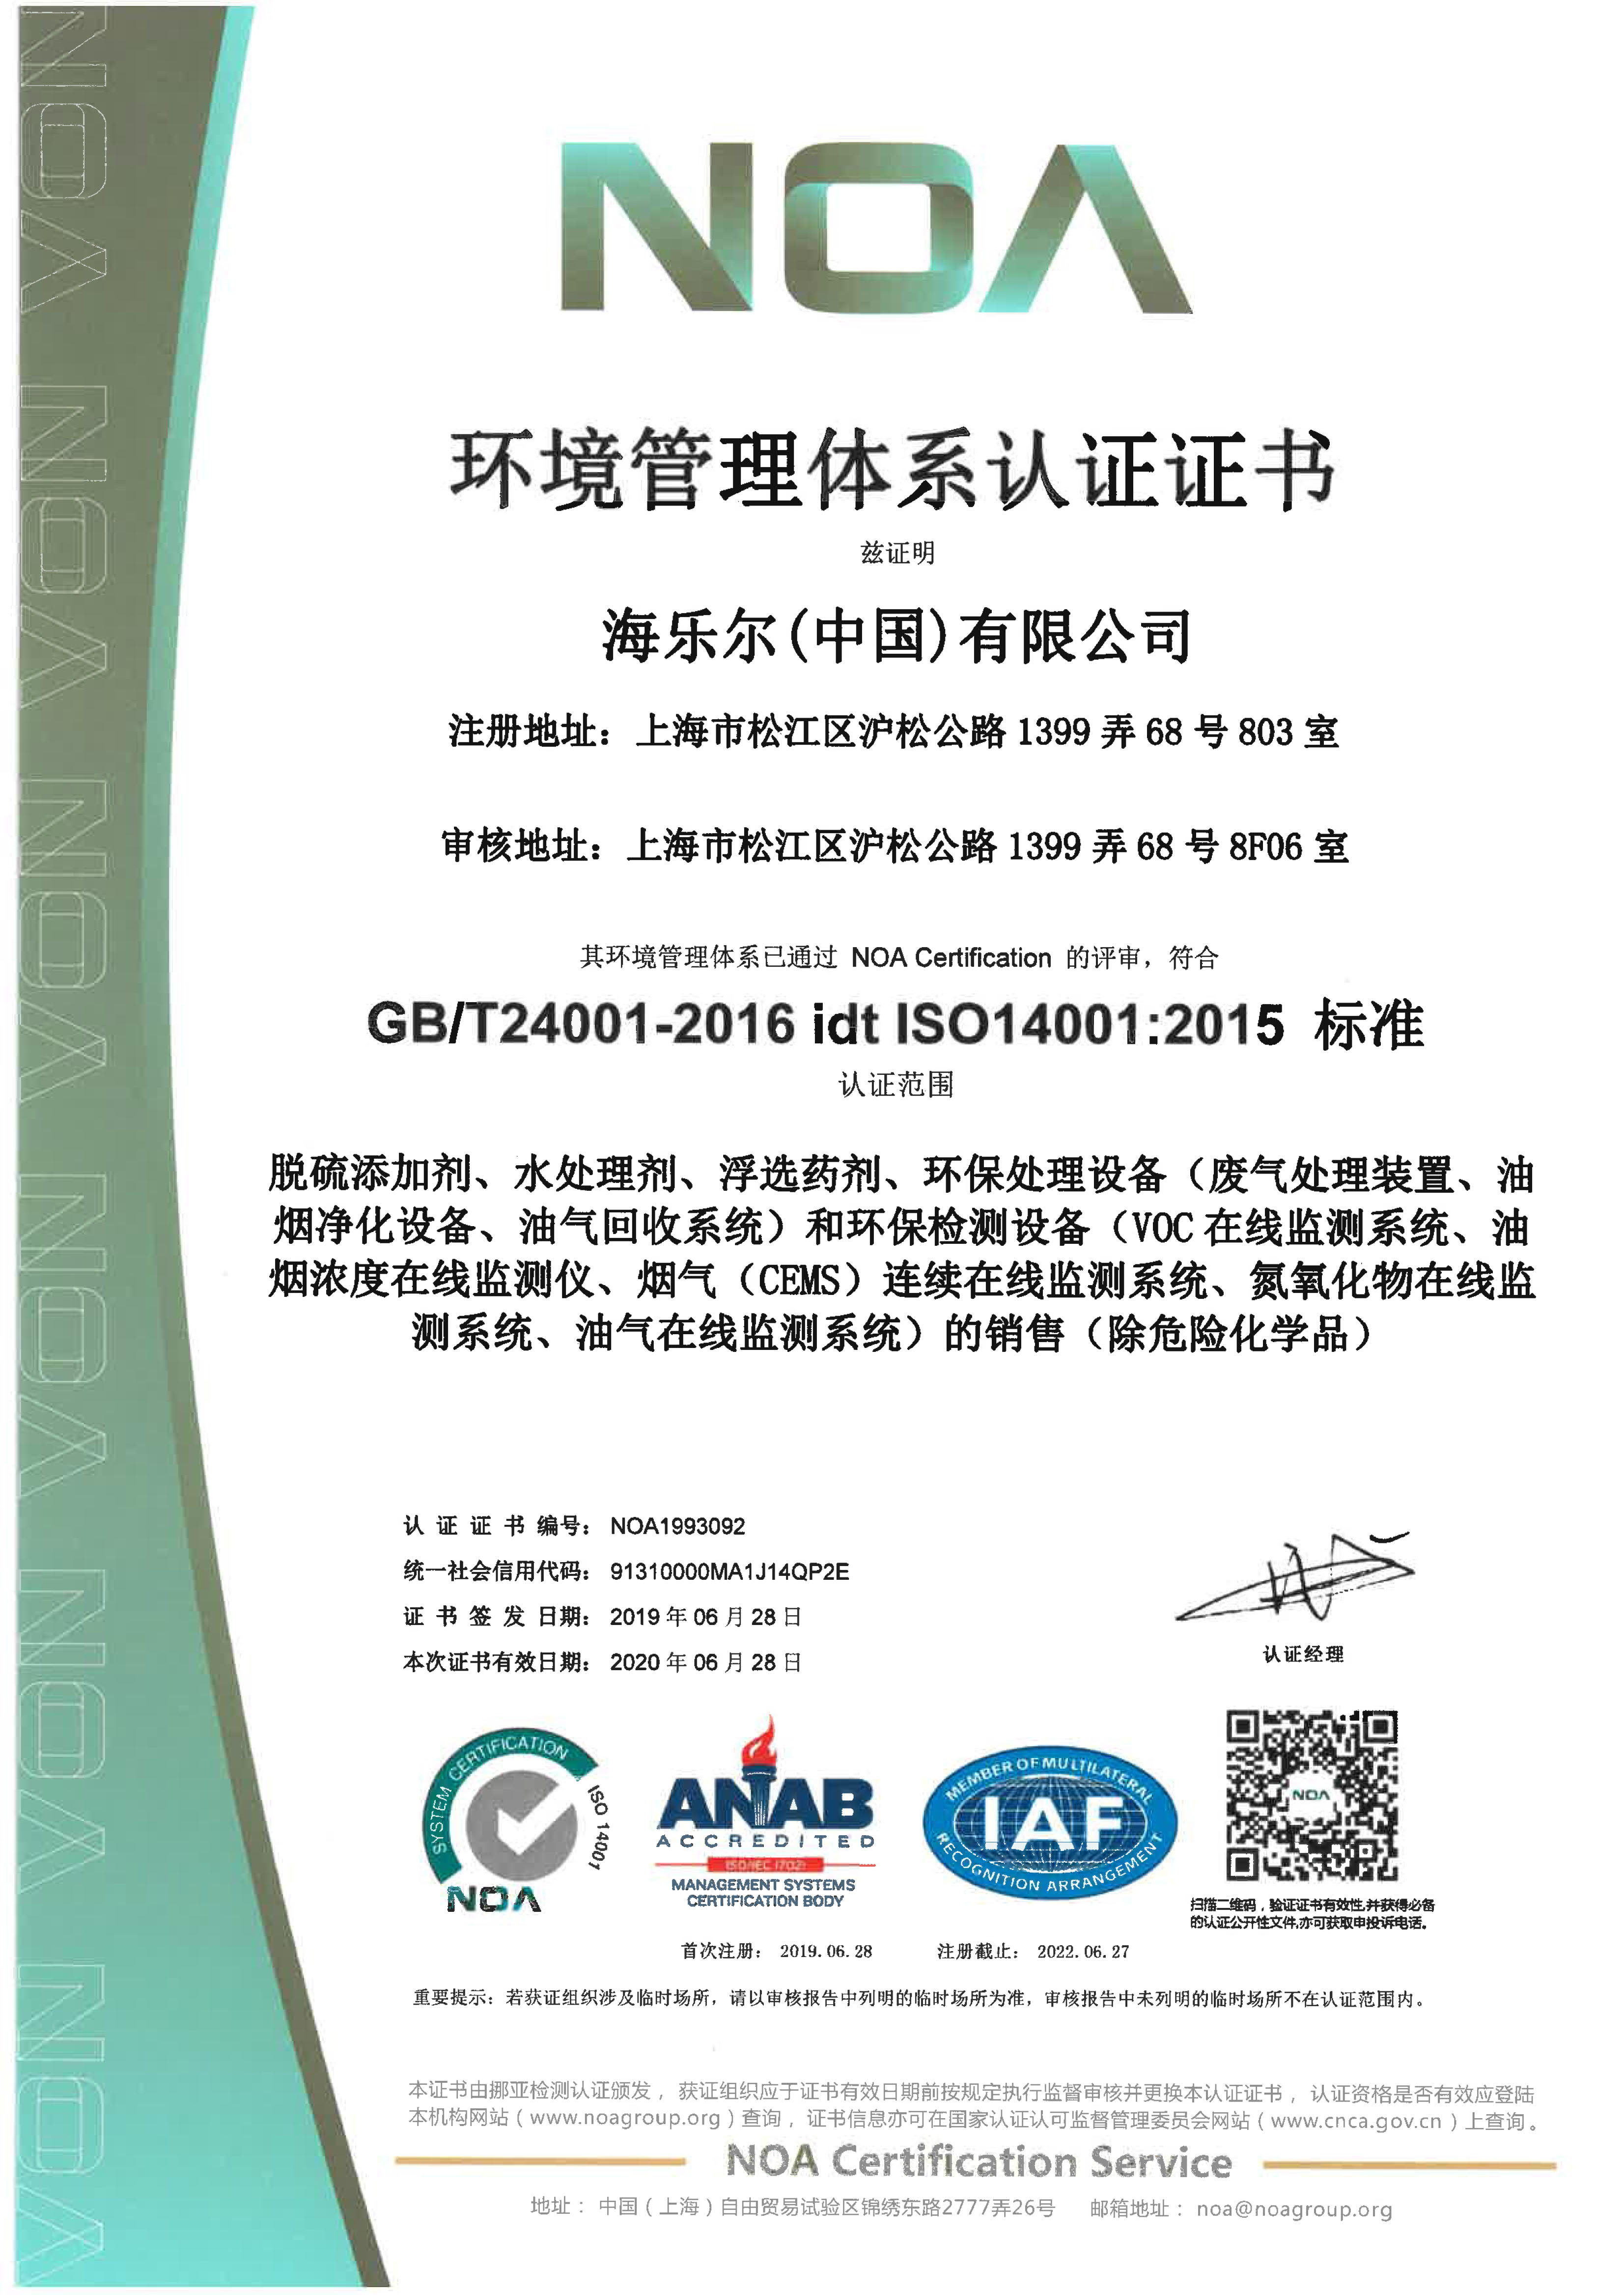 管理体体系认证证书-环境管理体系认证证书中文-2019.6.28新